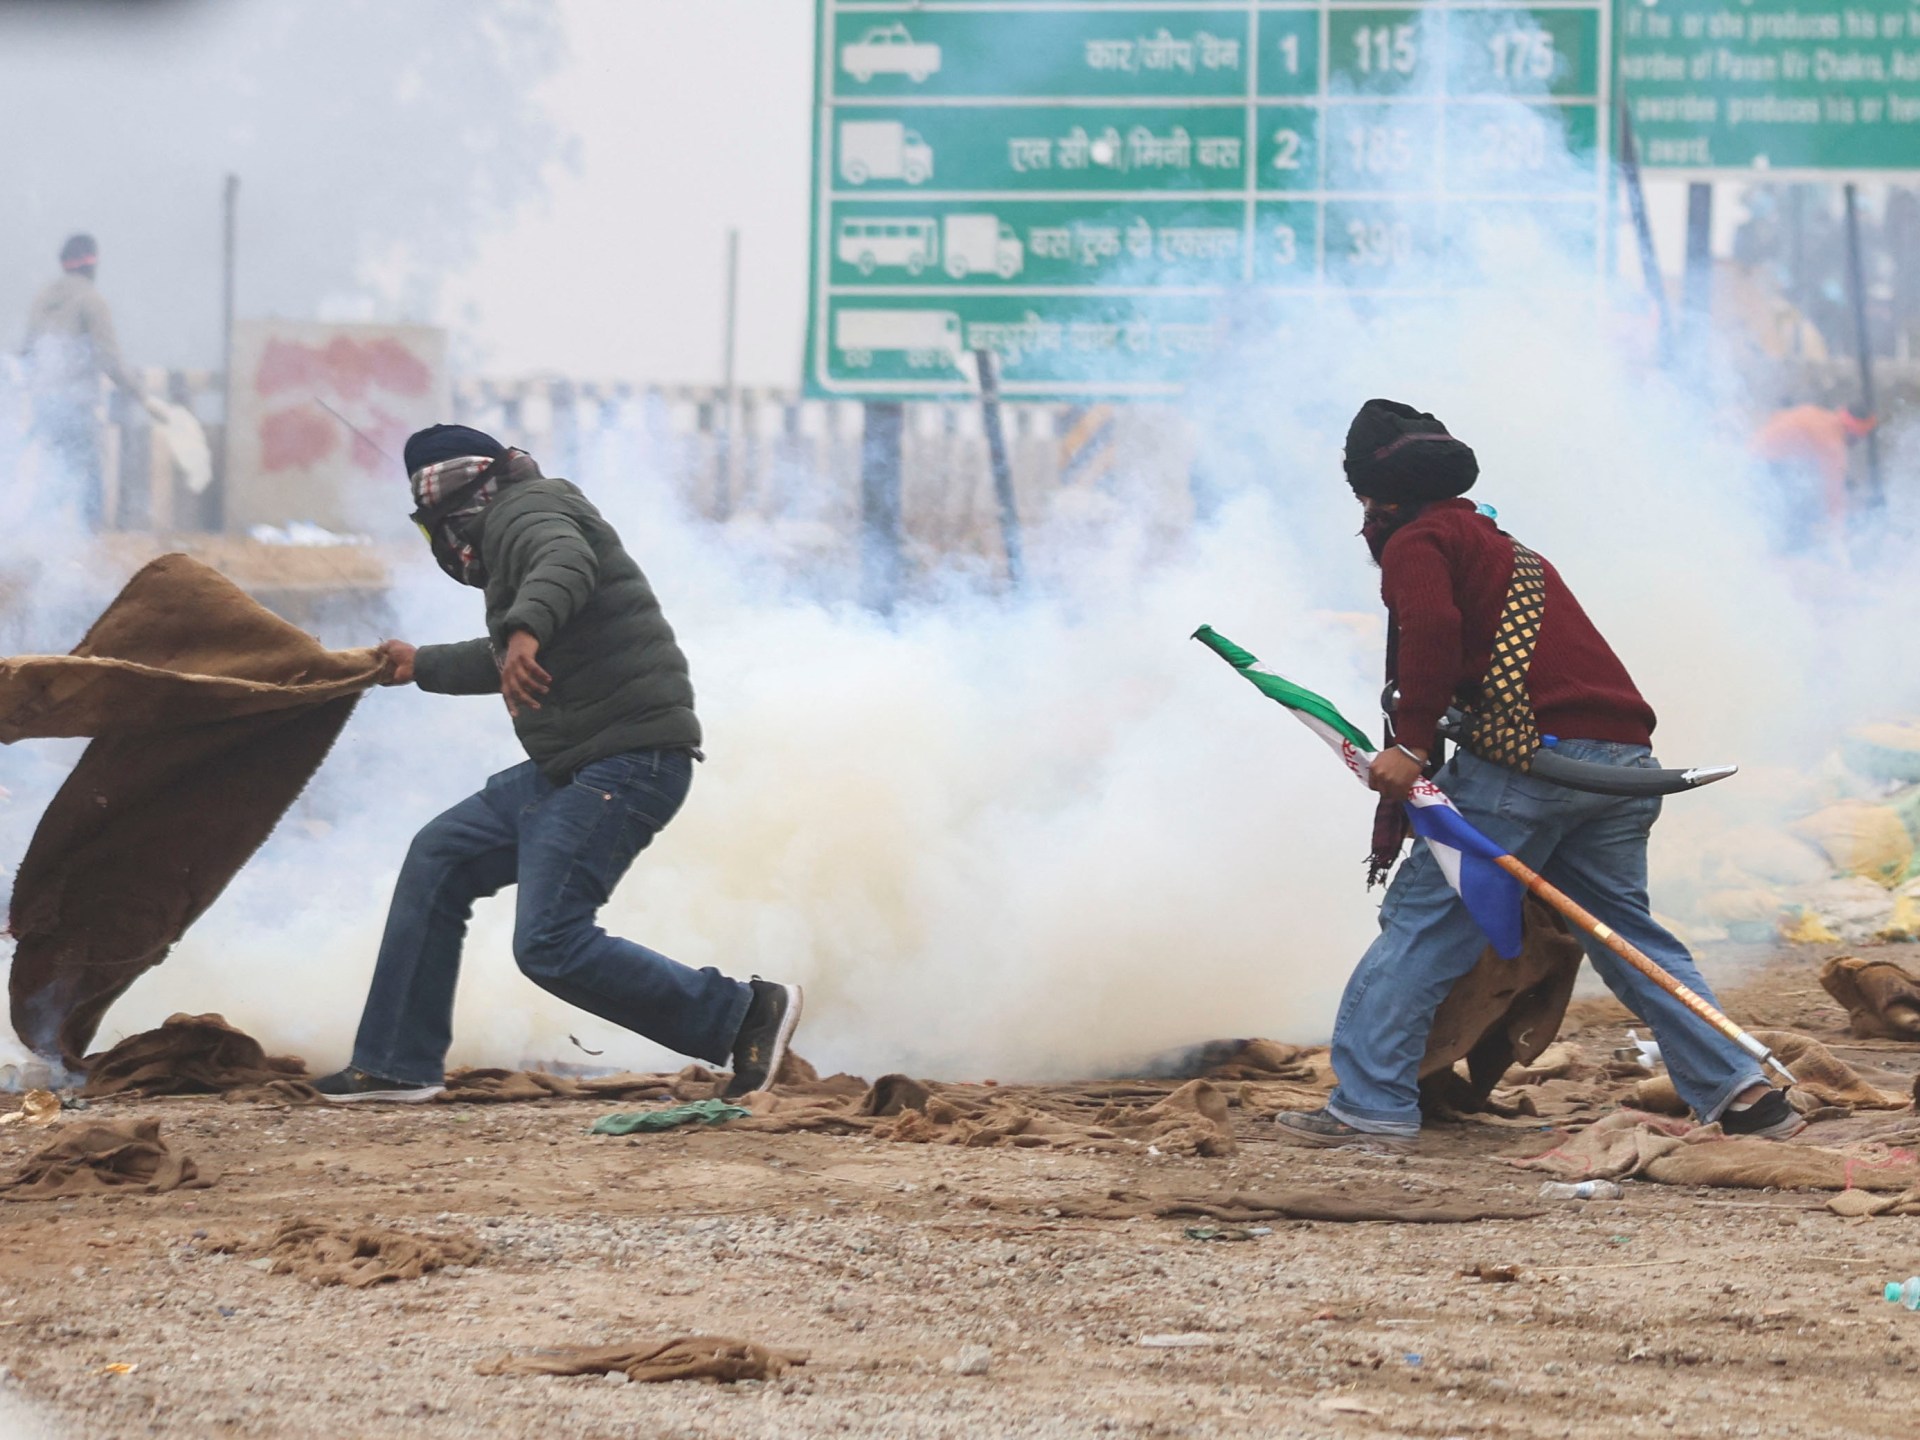 La policía garrocha gases lacrimógenos contra los agricultores indios que protestan en su marcha con destino a Nueva Delhi CINEINFO12